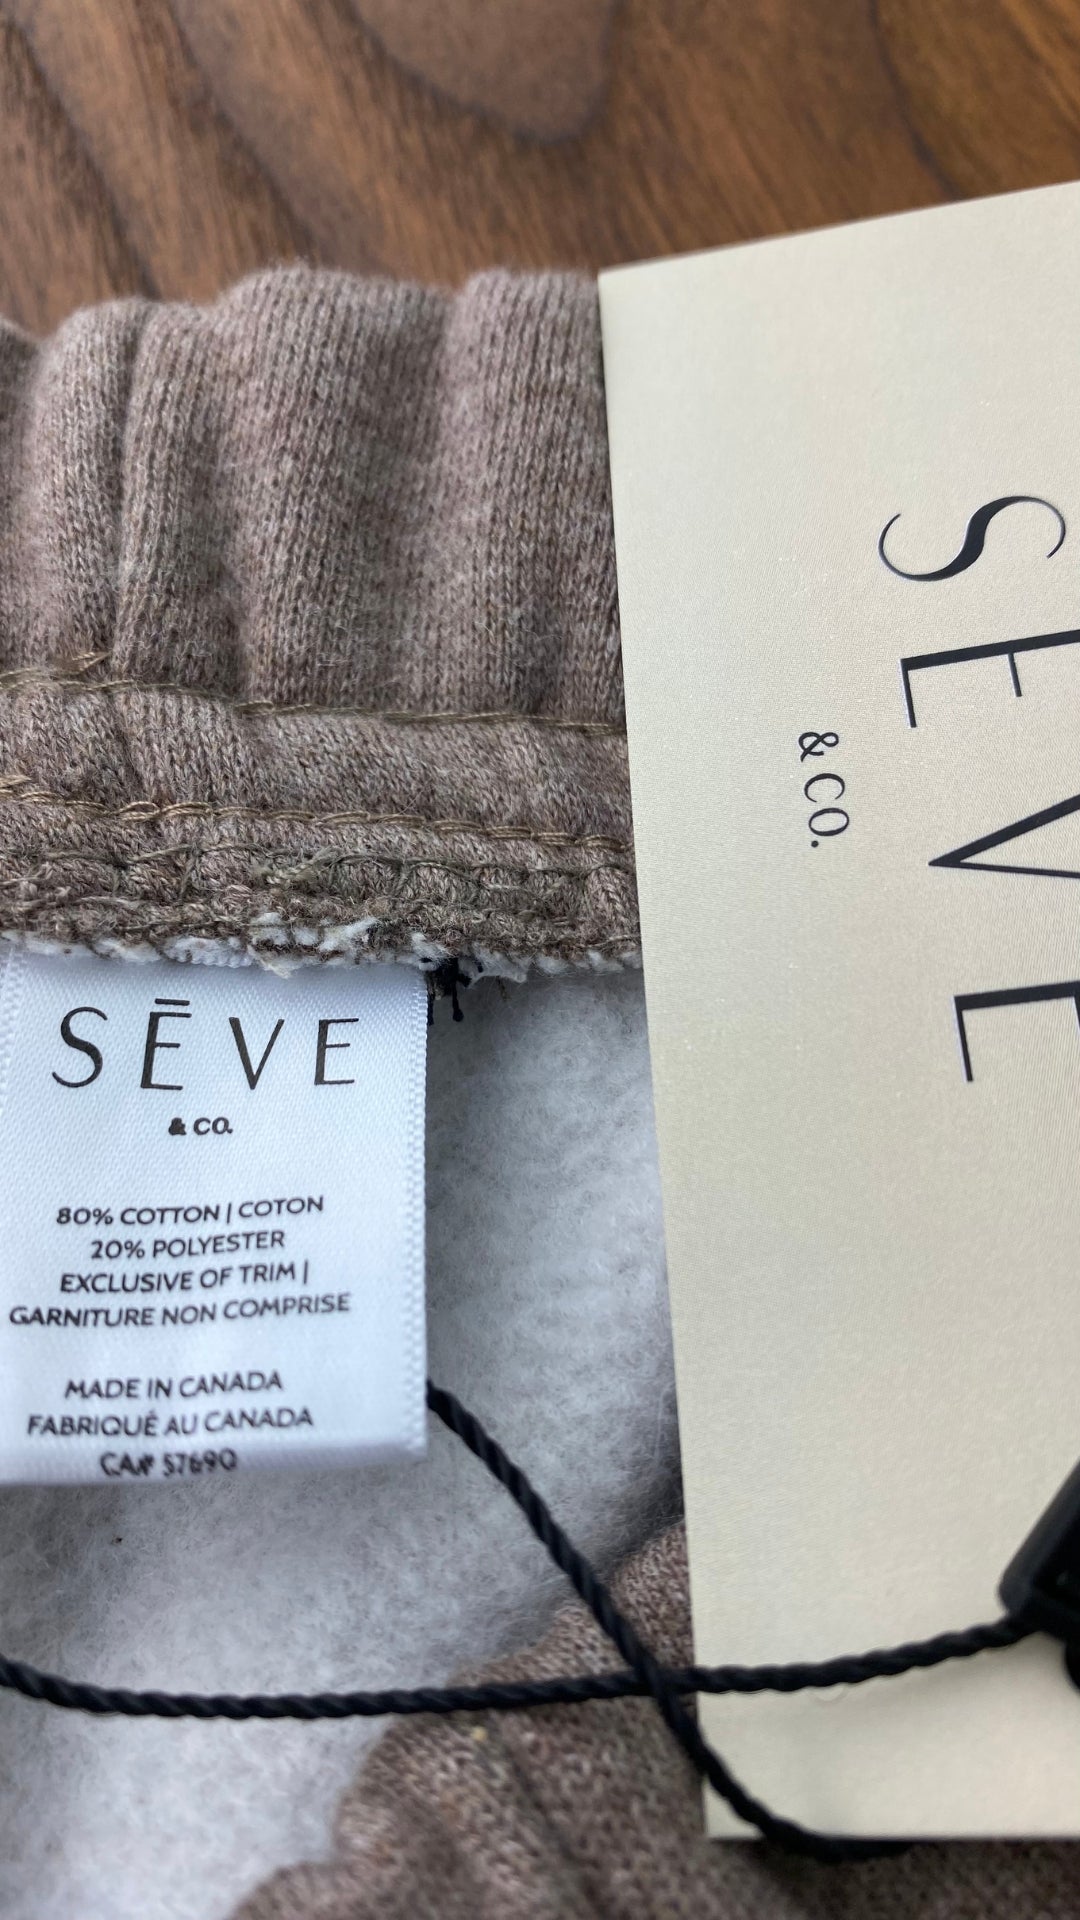 Pantalon jogger ouaté confort suprême Seve & Co. disponibles en plusieurs tailles. Vue de l'étiquette de composition.